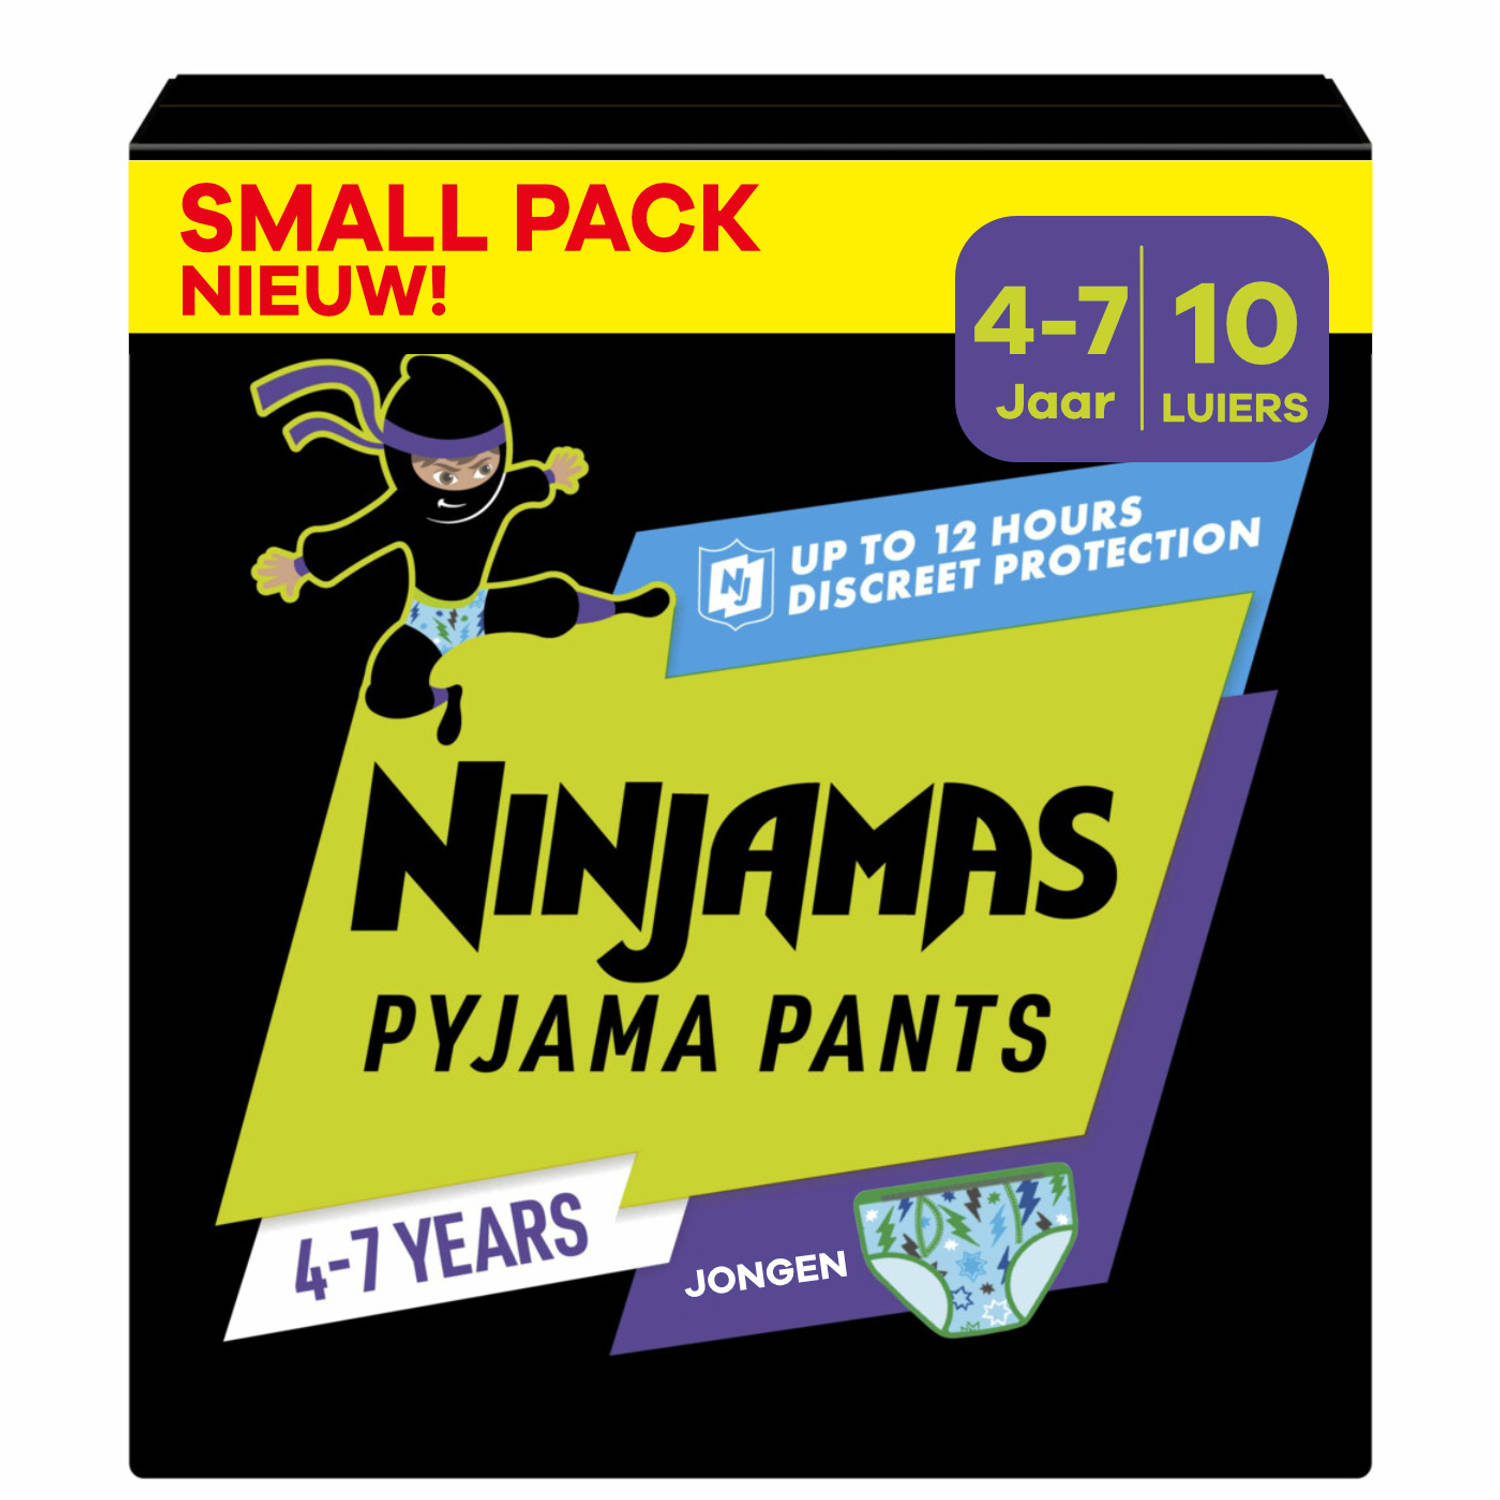 Pampers Ninjamas Pyjama Pants Nacht Jongen 4-7 jaar Small Pack 10 luierbroekjes